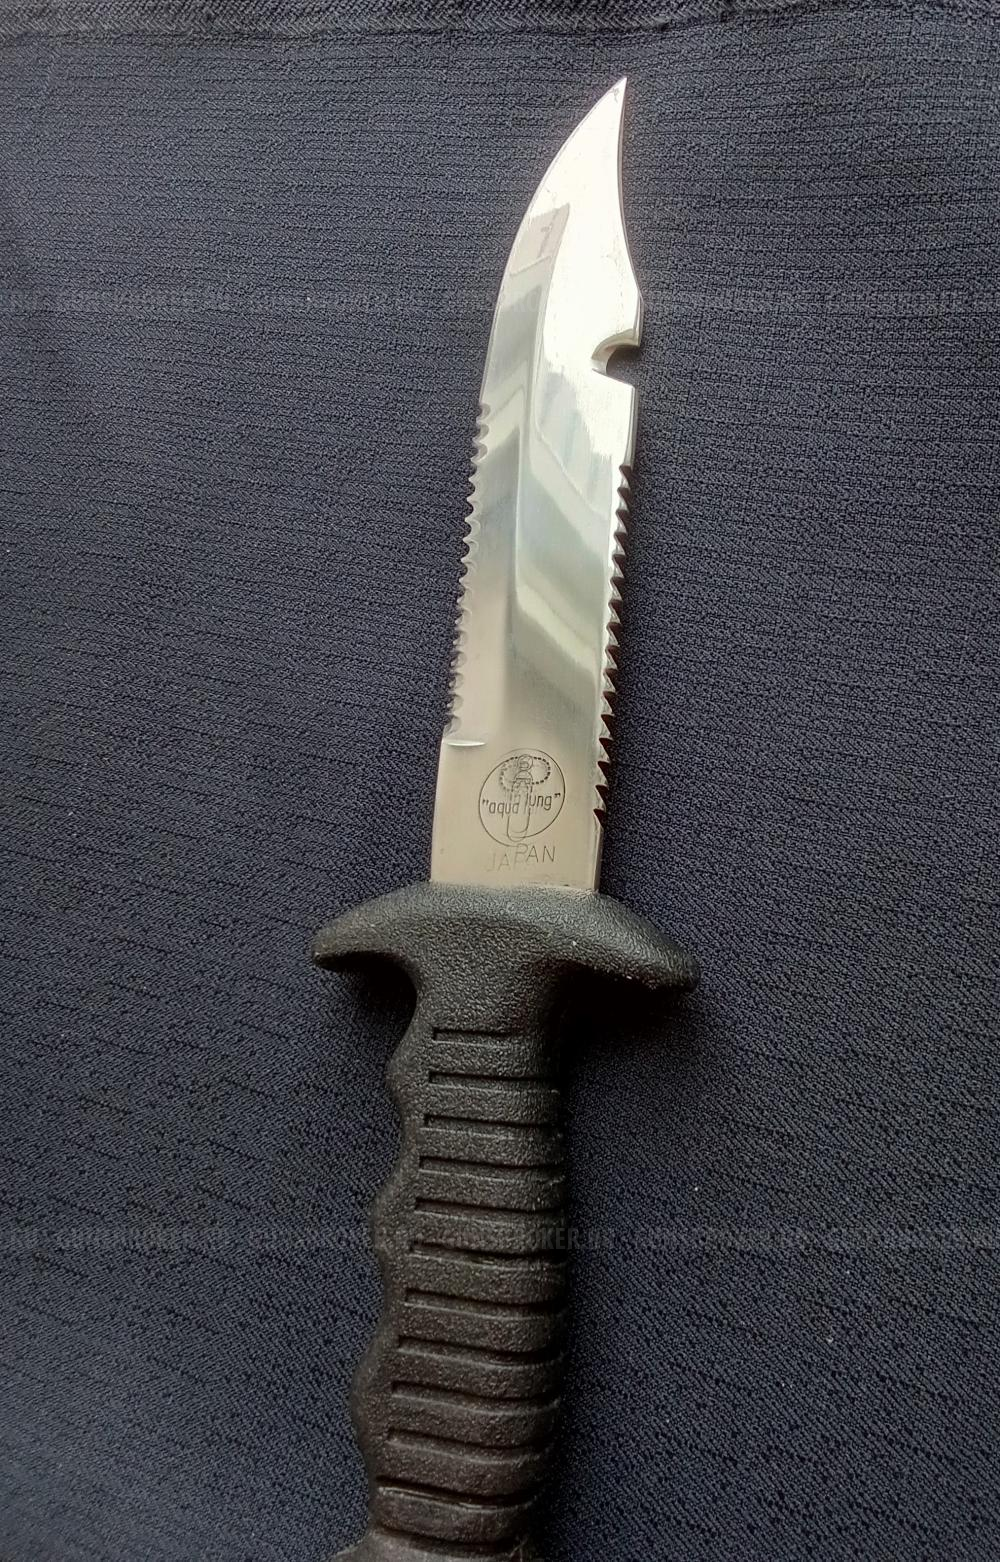 Нож дайверский для охоты и рыбалки из Японии